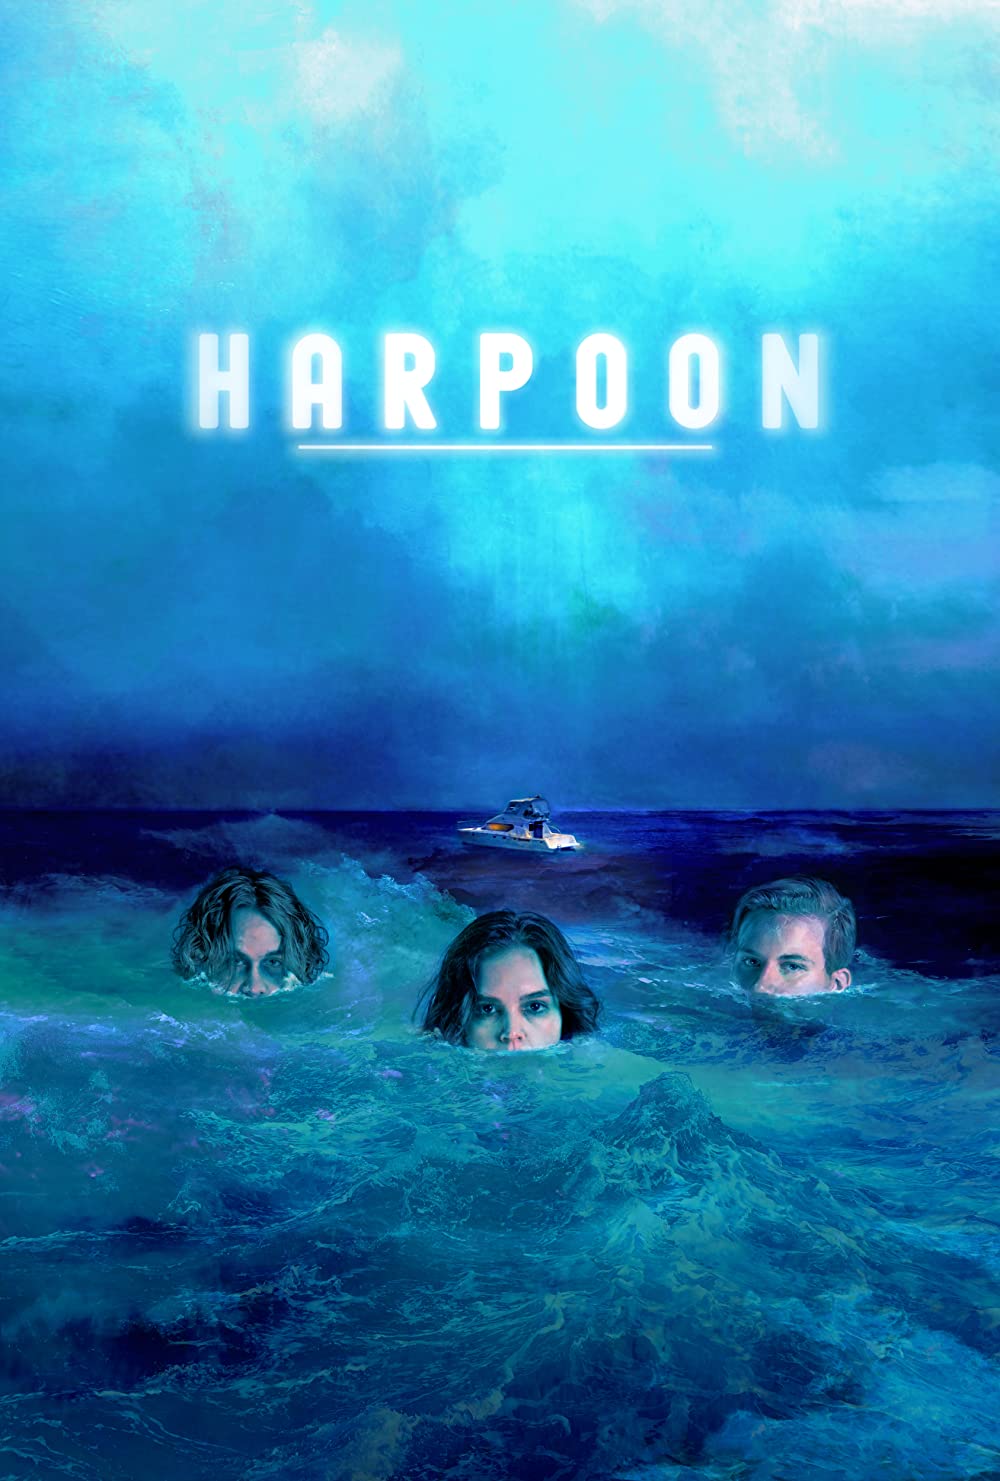 Filmbeschreibung zu Harpoon